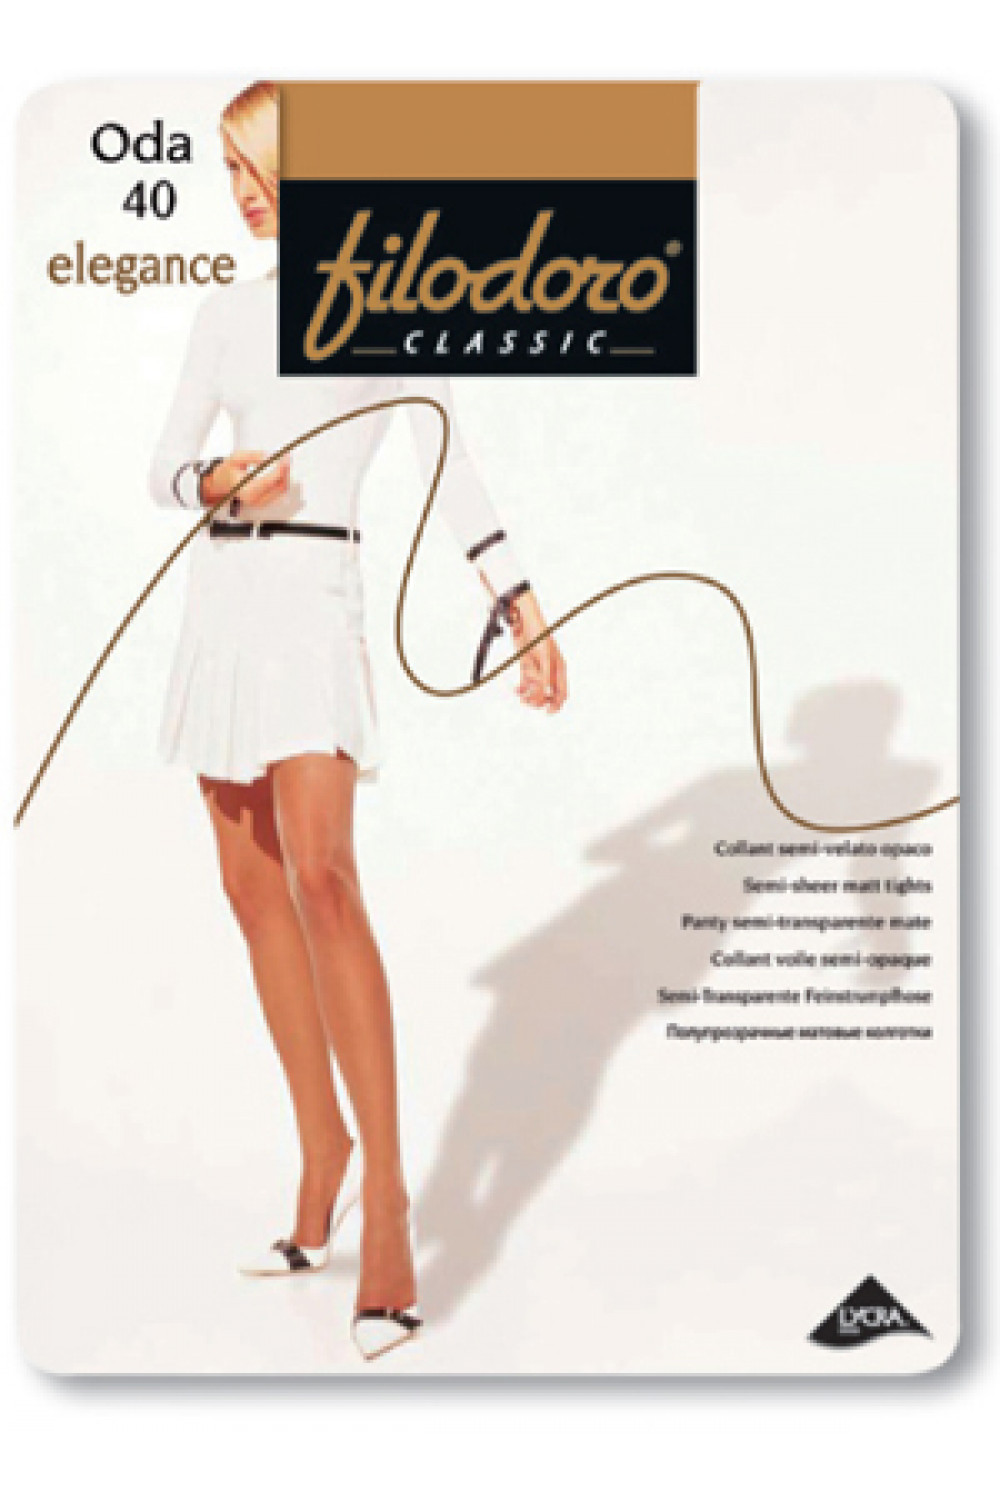 Прозрачные эластичные колготки Oda 40 Elegance (120/10), Filodoro